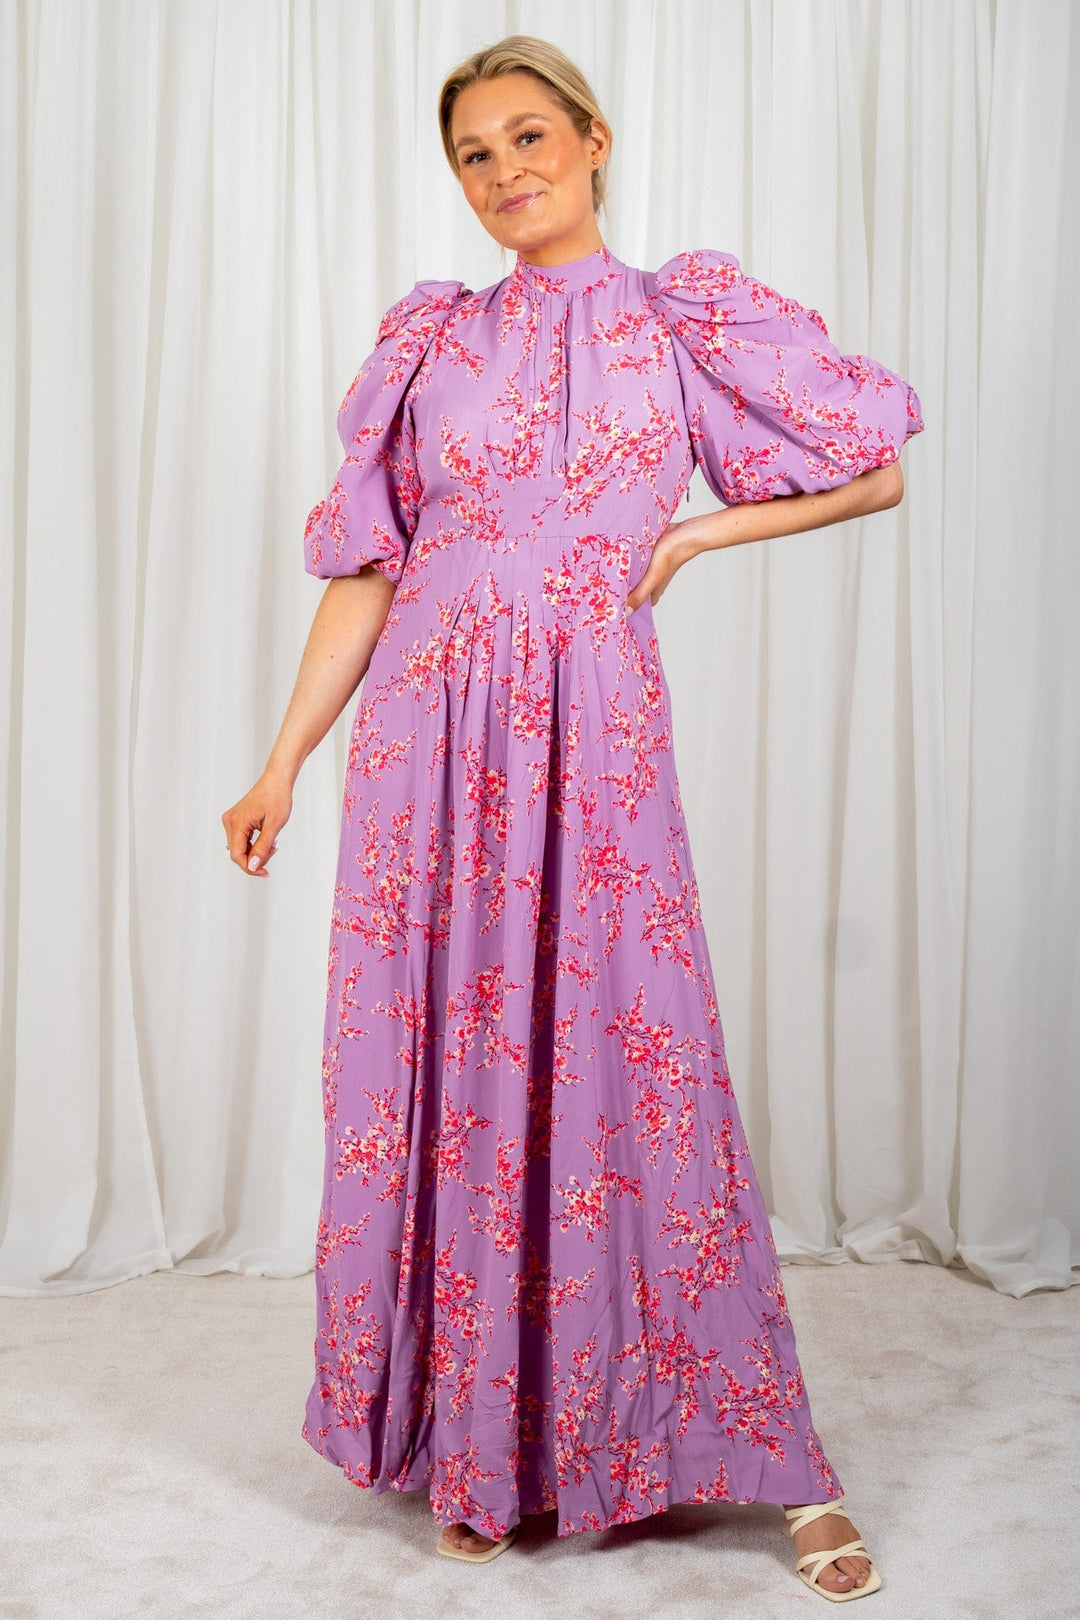 Spring Tieback Gown Cherry Blossom | Kjoler | Smuk - Dameklær på nett